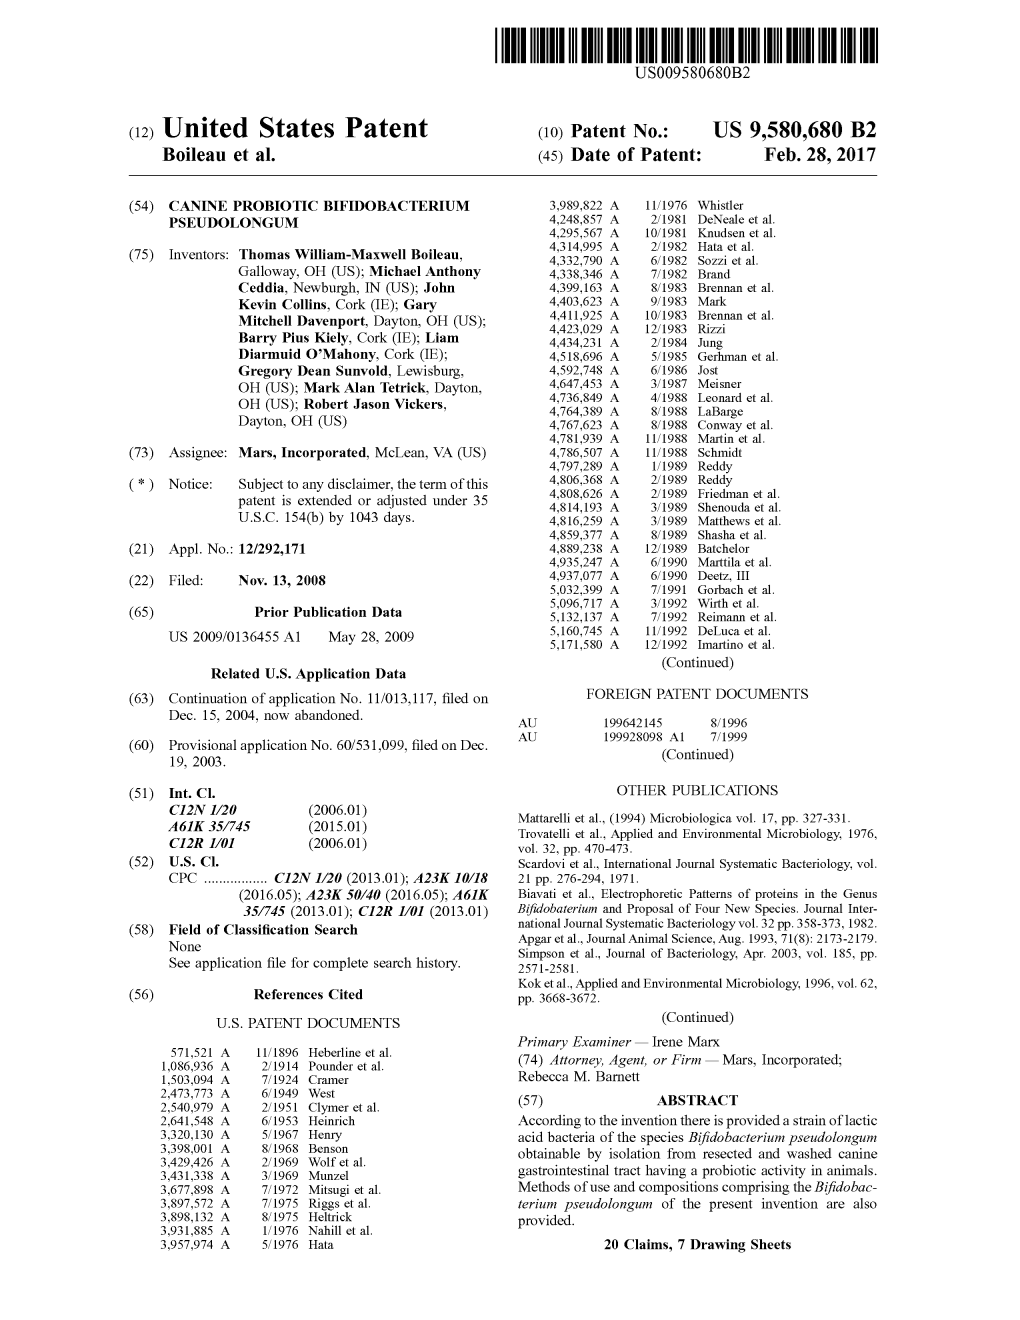 (12) United States Patent (10) Patent No.: US 9,580,680 B2 Boileau Et Al